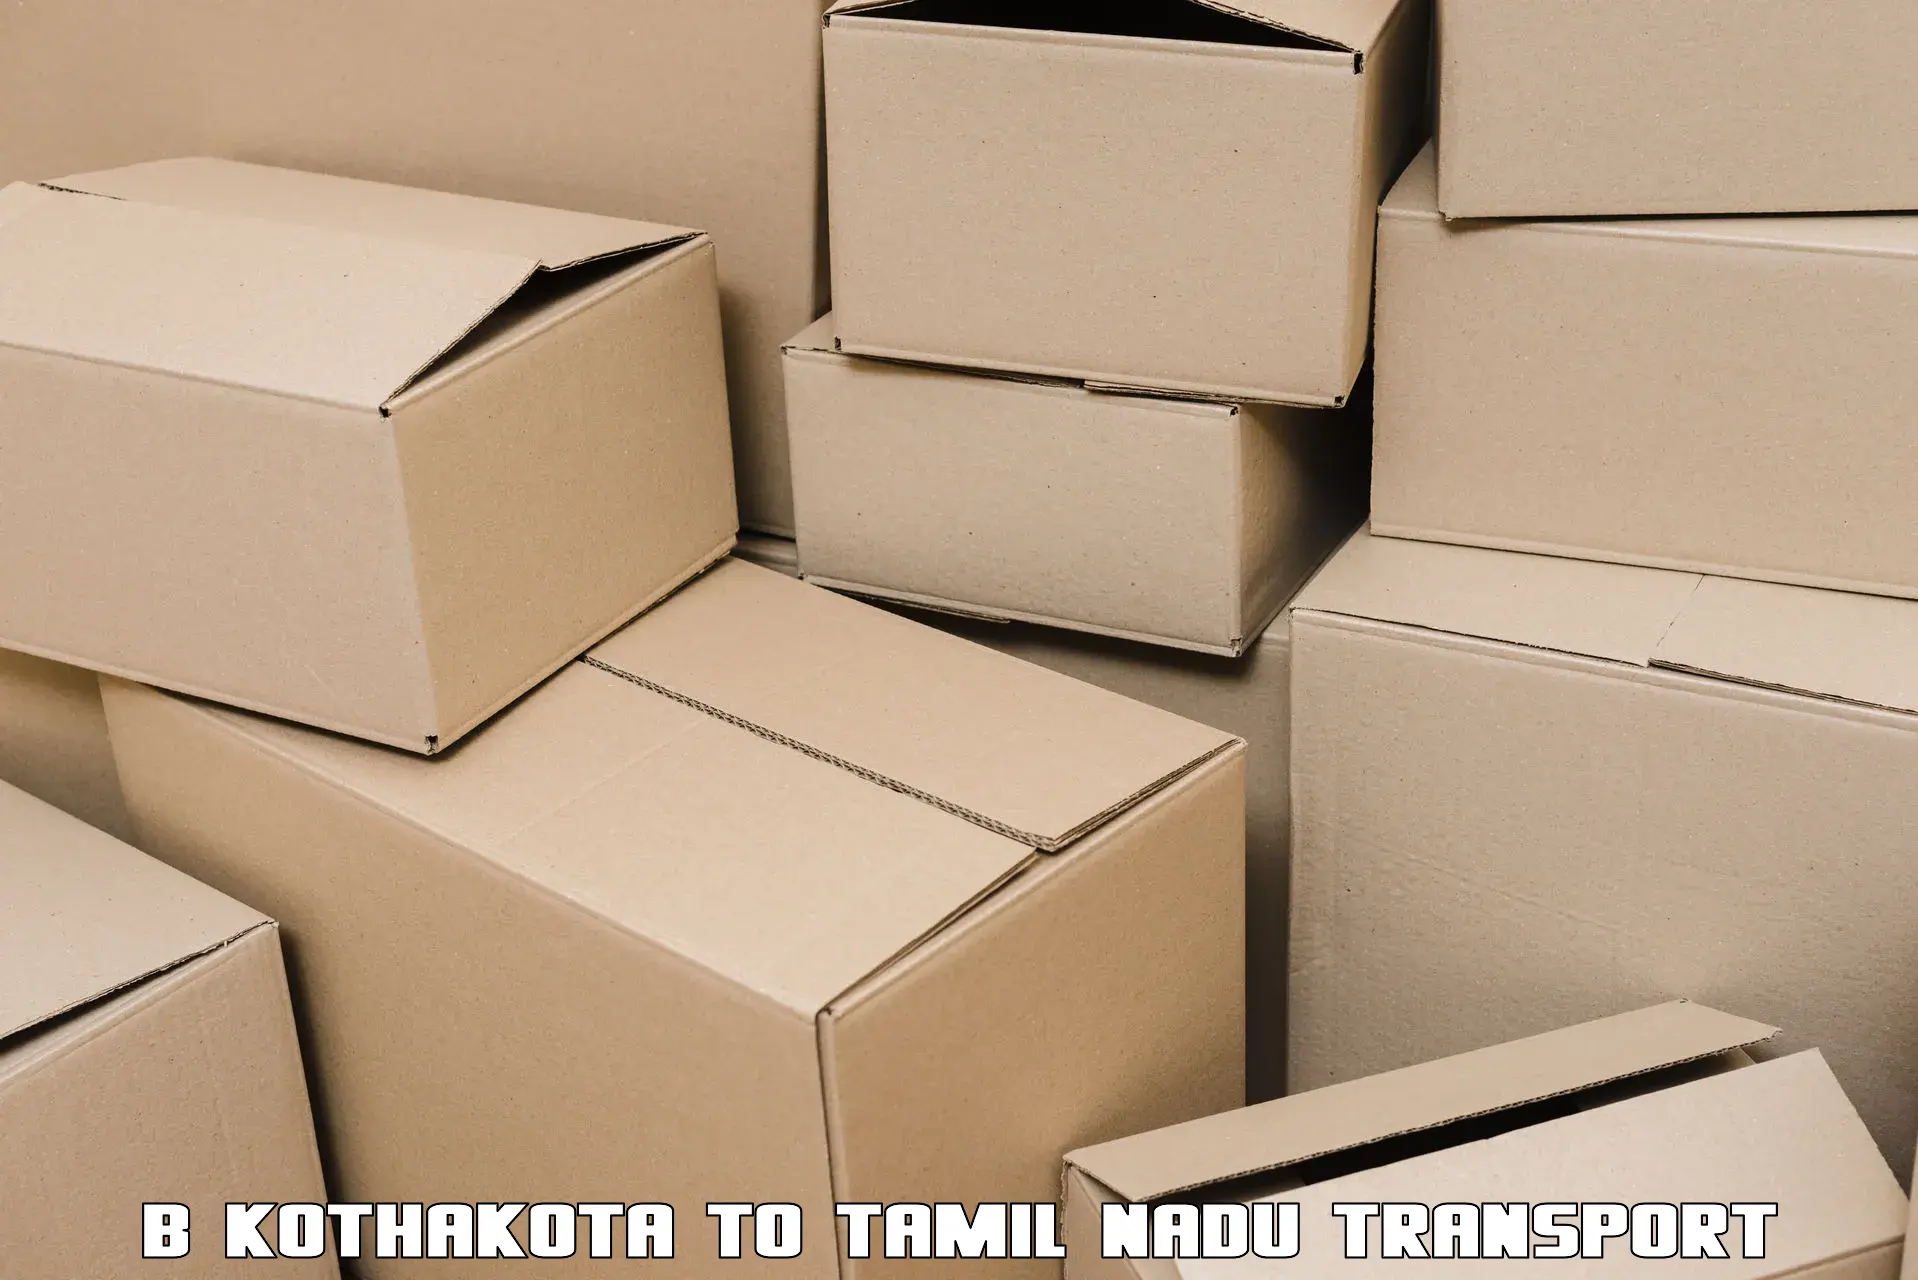 Container transport service B Kothakota to Denkanikottai